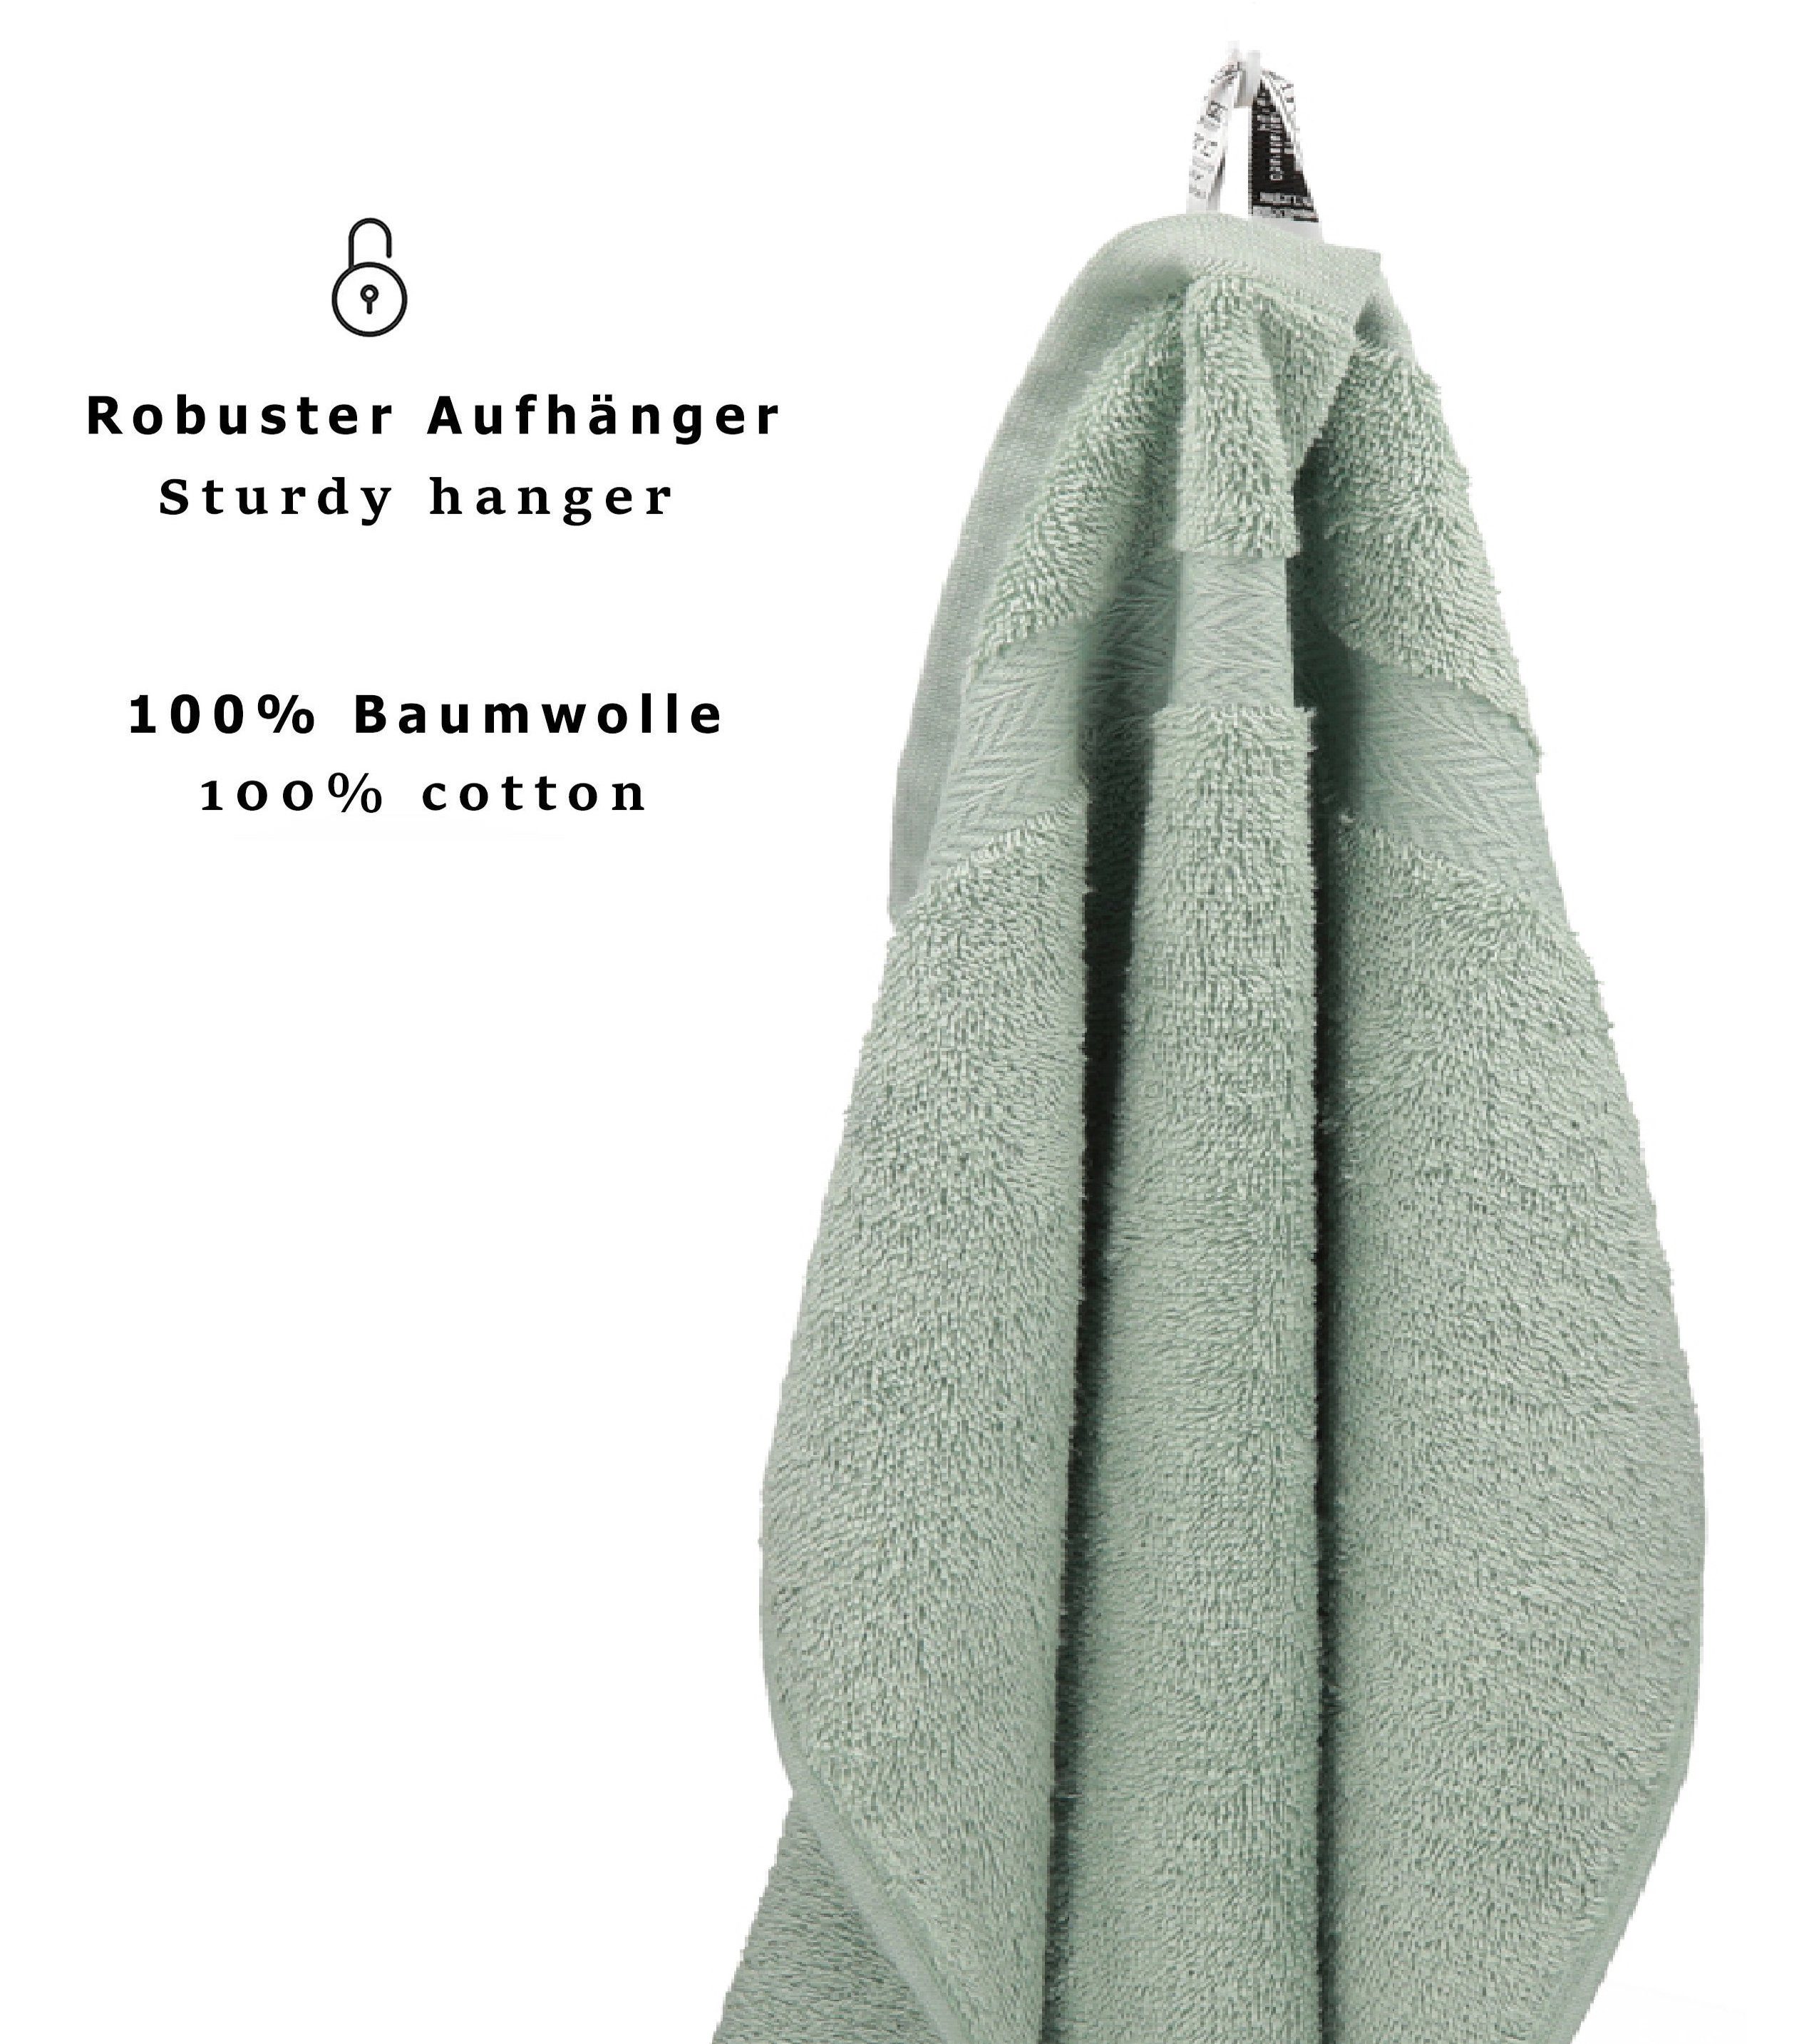 PREMIUM Betz Baumwolle, Frottier Baumwolle, 100% (12-tlg) Handtuch-Set 100% Handtuch heugrün Set 12er